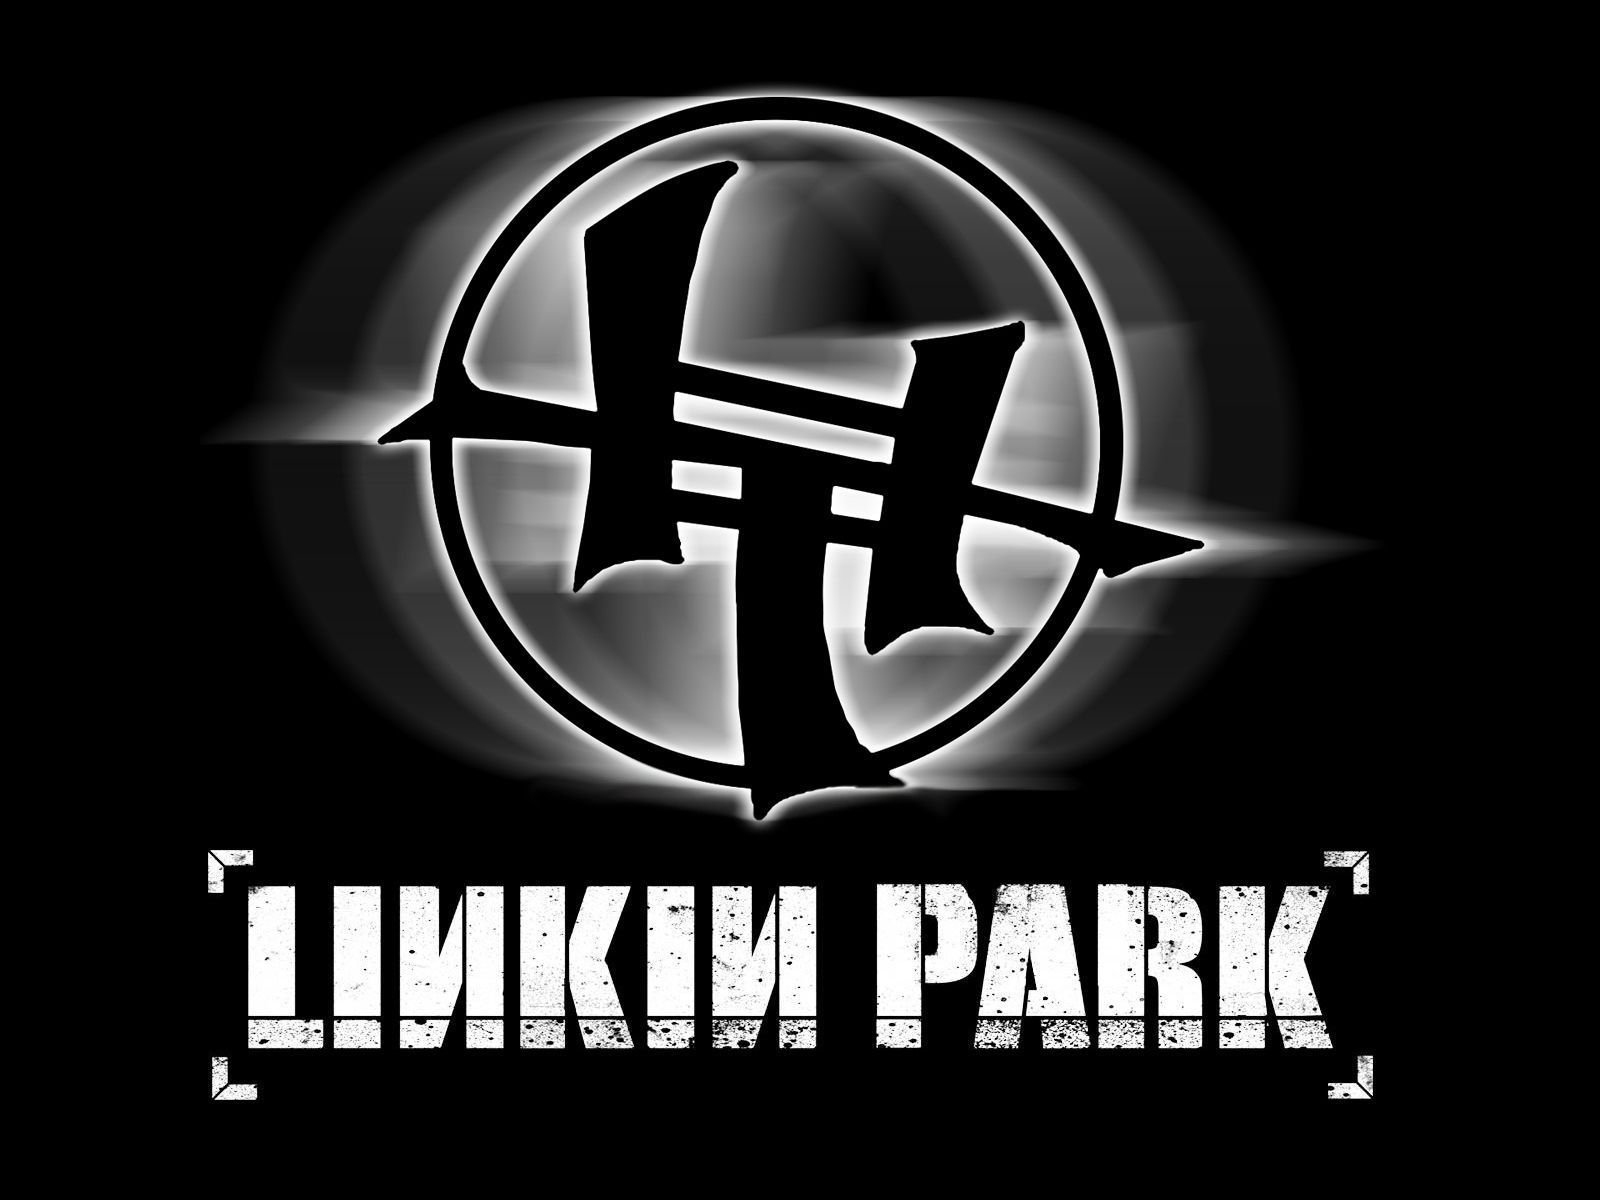 LP - Linkin Park Wallpaper 22168678 - Fanpop